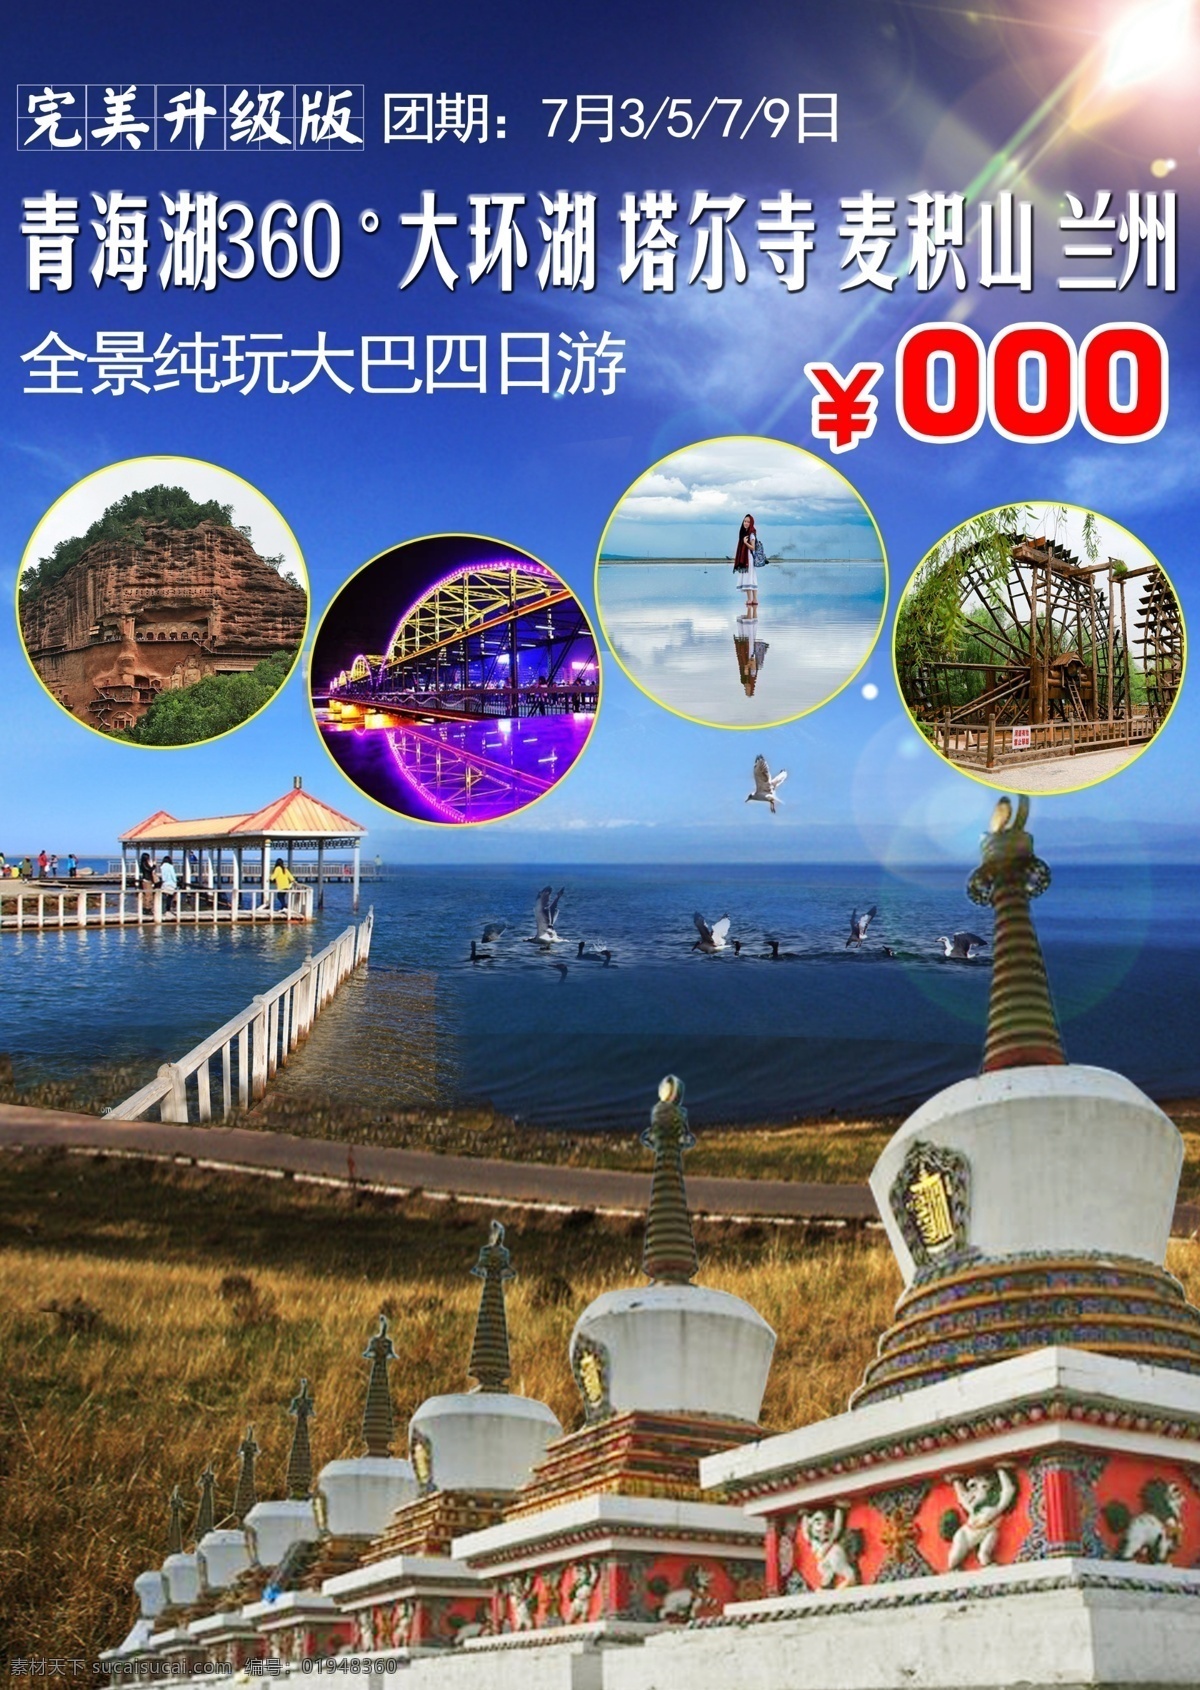 青海湖 旅游 海报 大环湖 塔尔寺 麦积山 兰州 合成 风景 蓝色